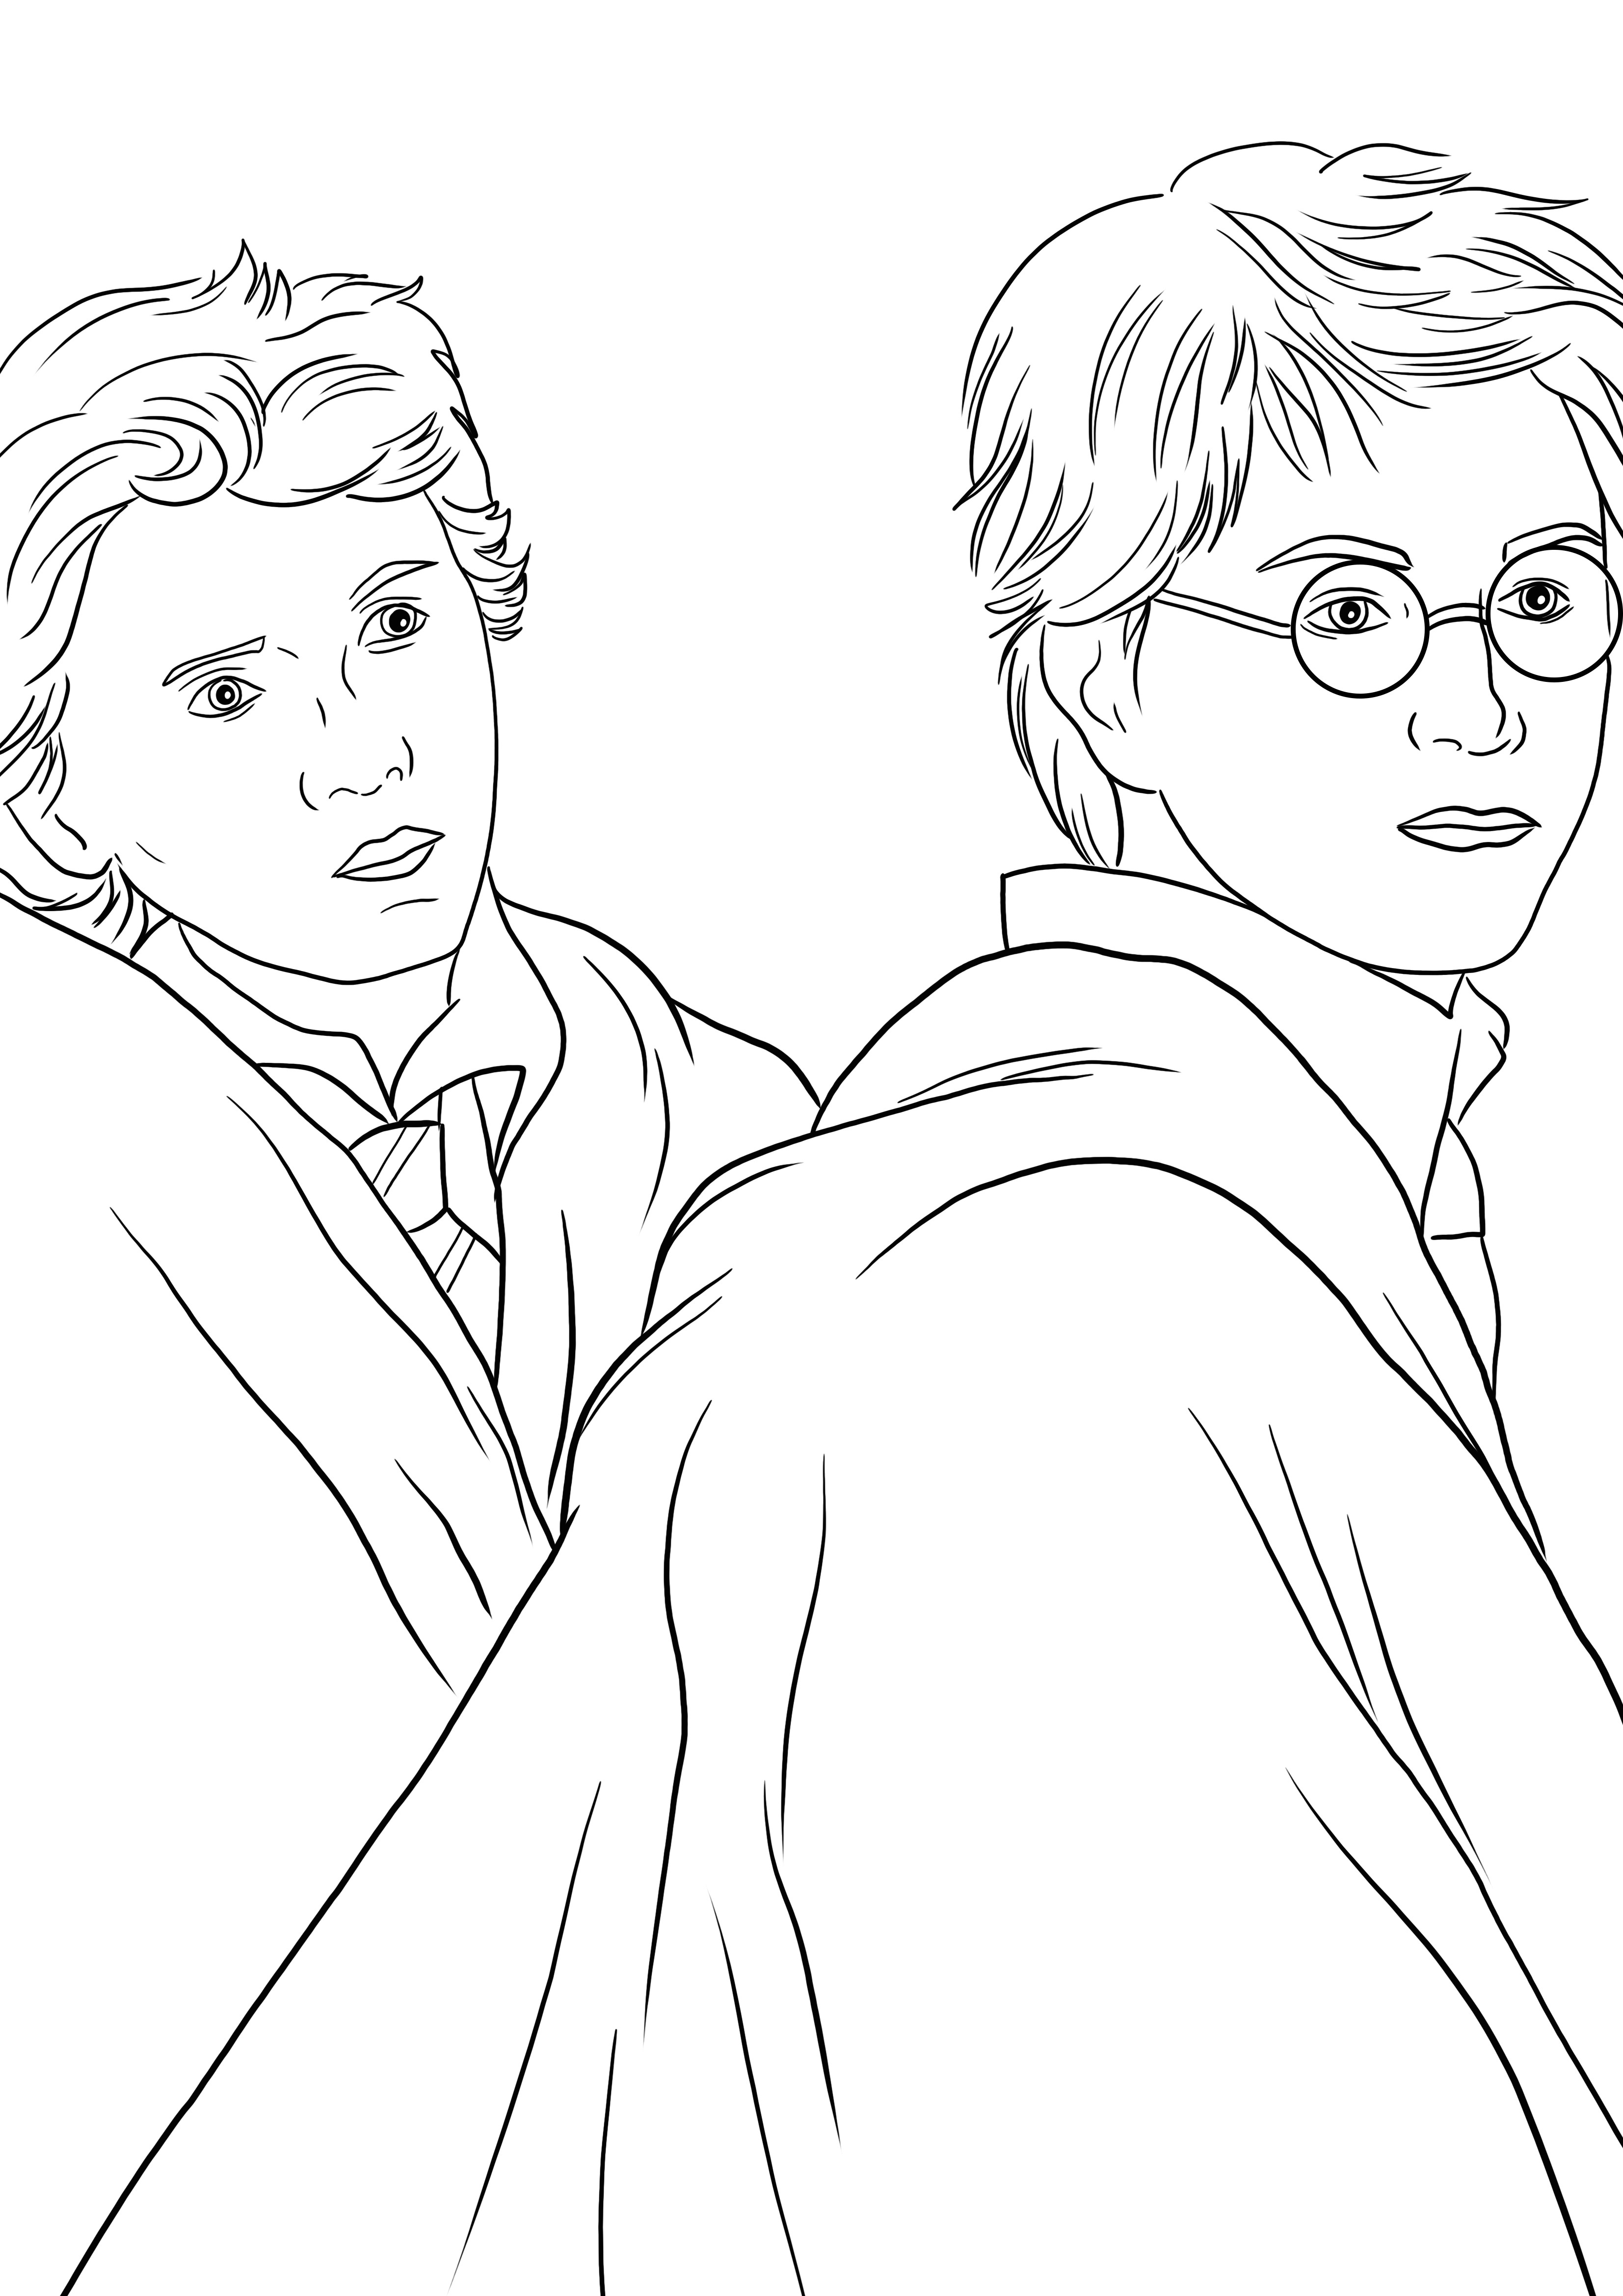 Desenho de Harry e Weasley para colorir para imprimir ou baixar para as crianças colorirem